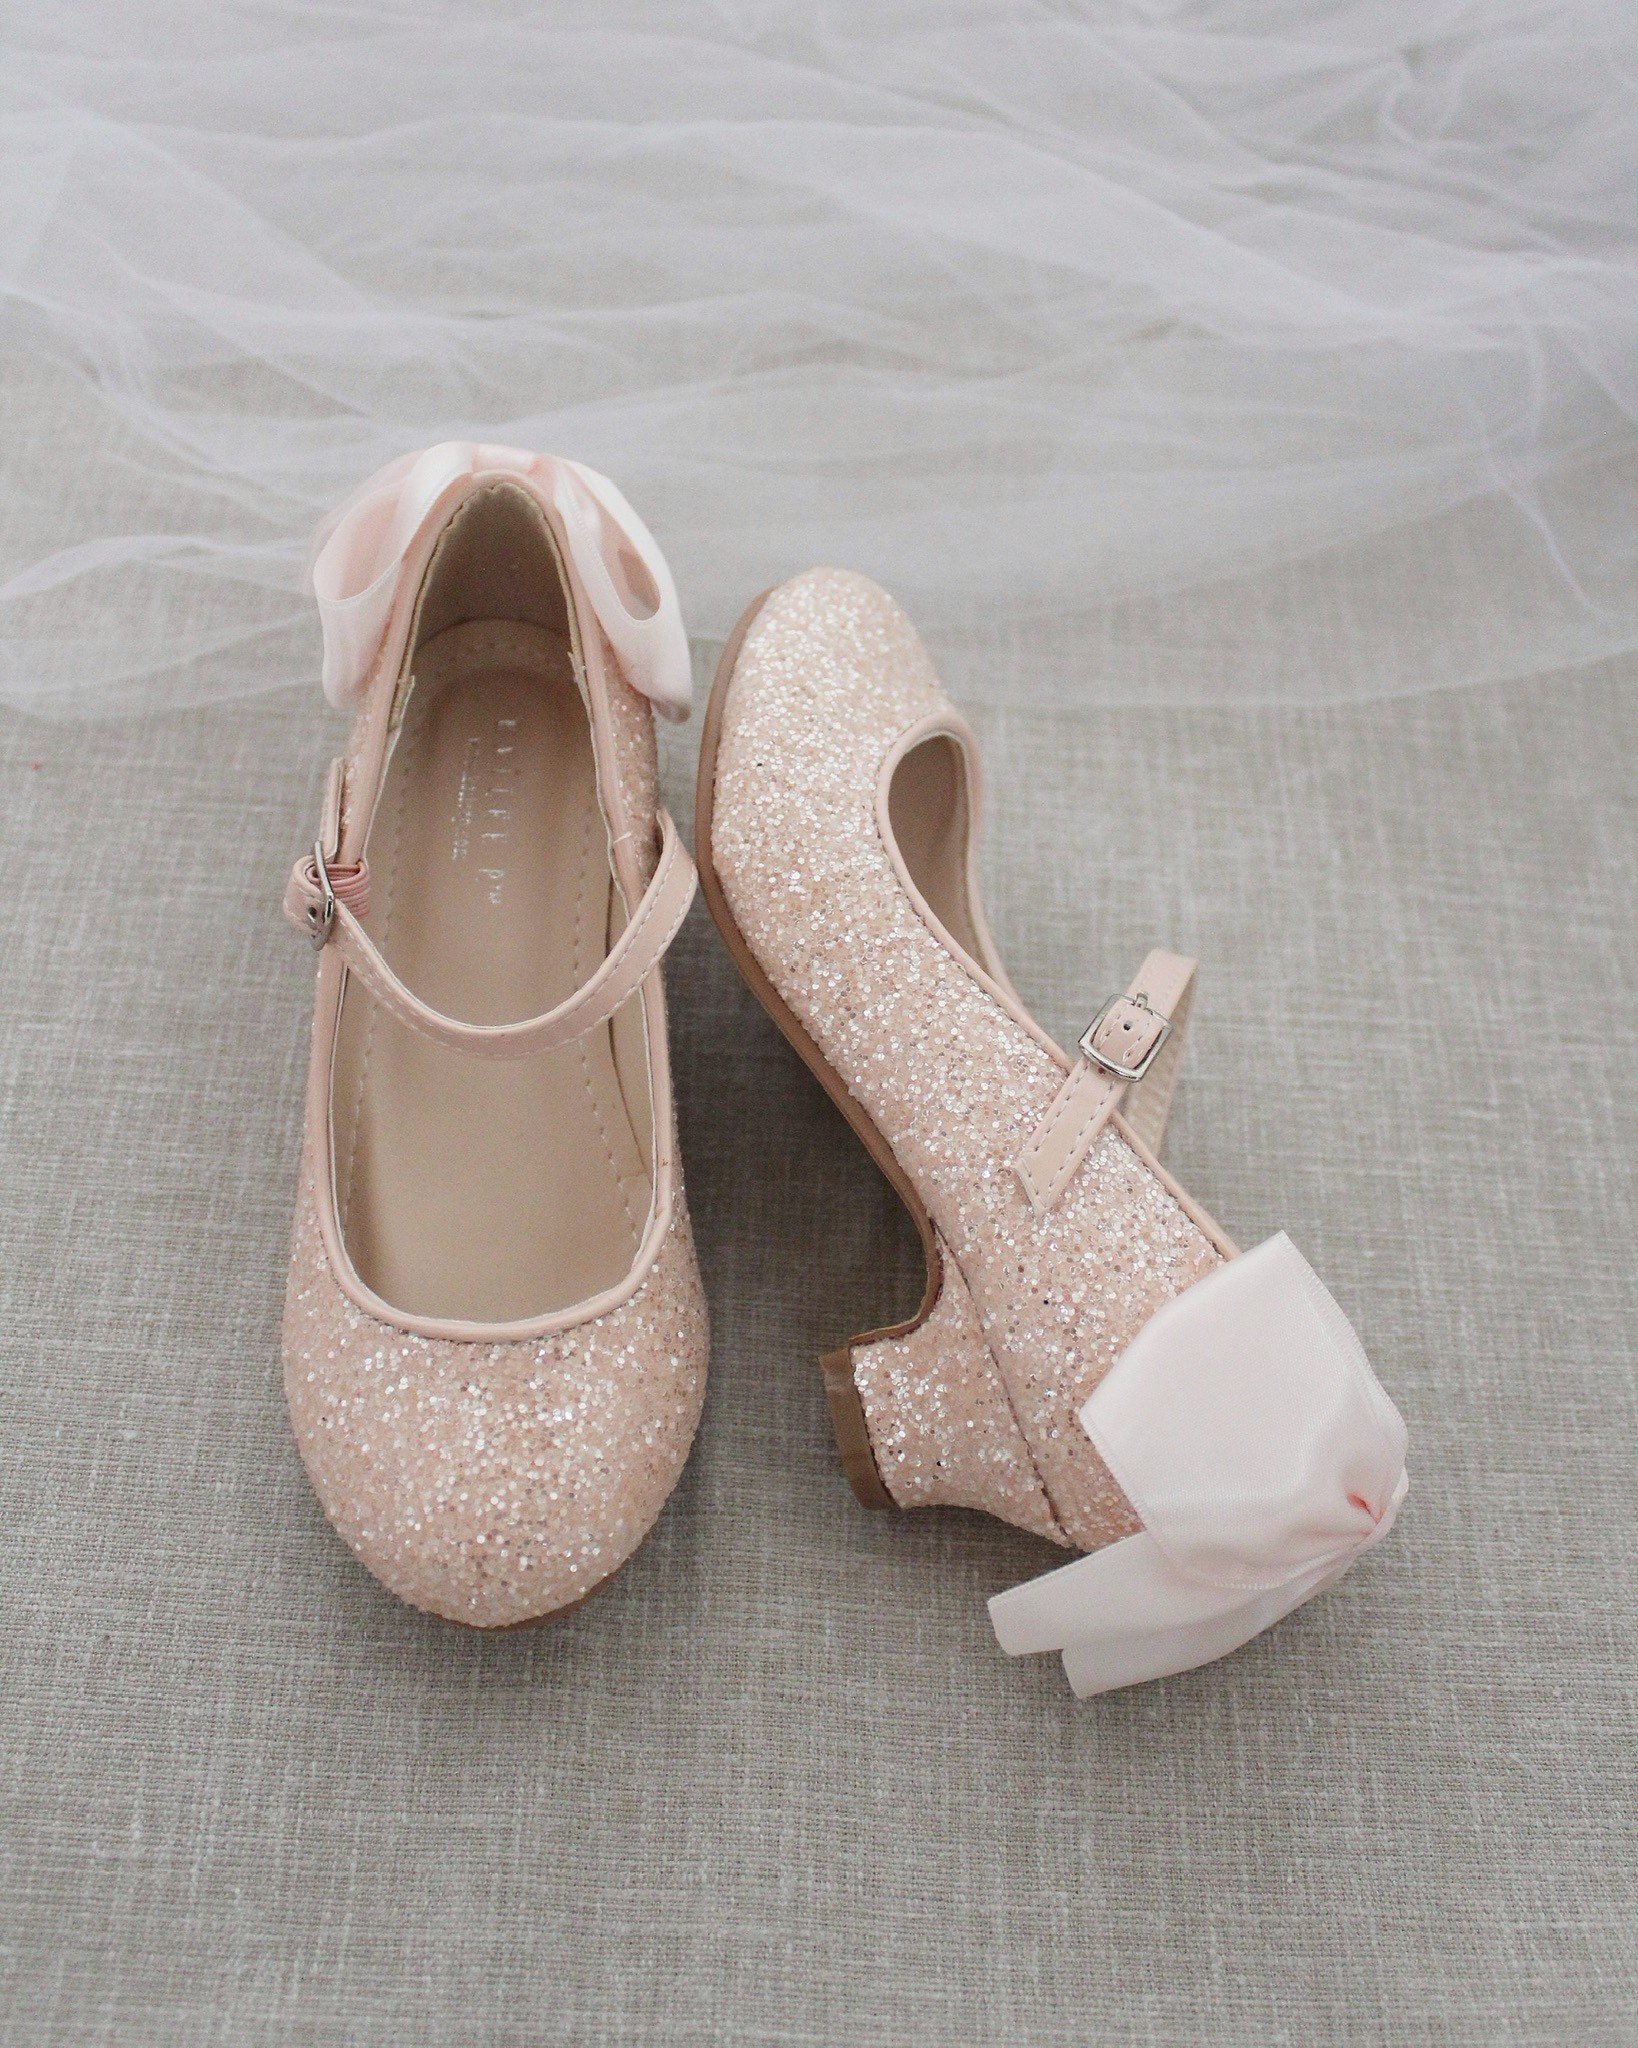 Girls Heel Glitter Shoes DUSTY PINK Rock Glitter mary-jane | Etsy